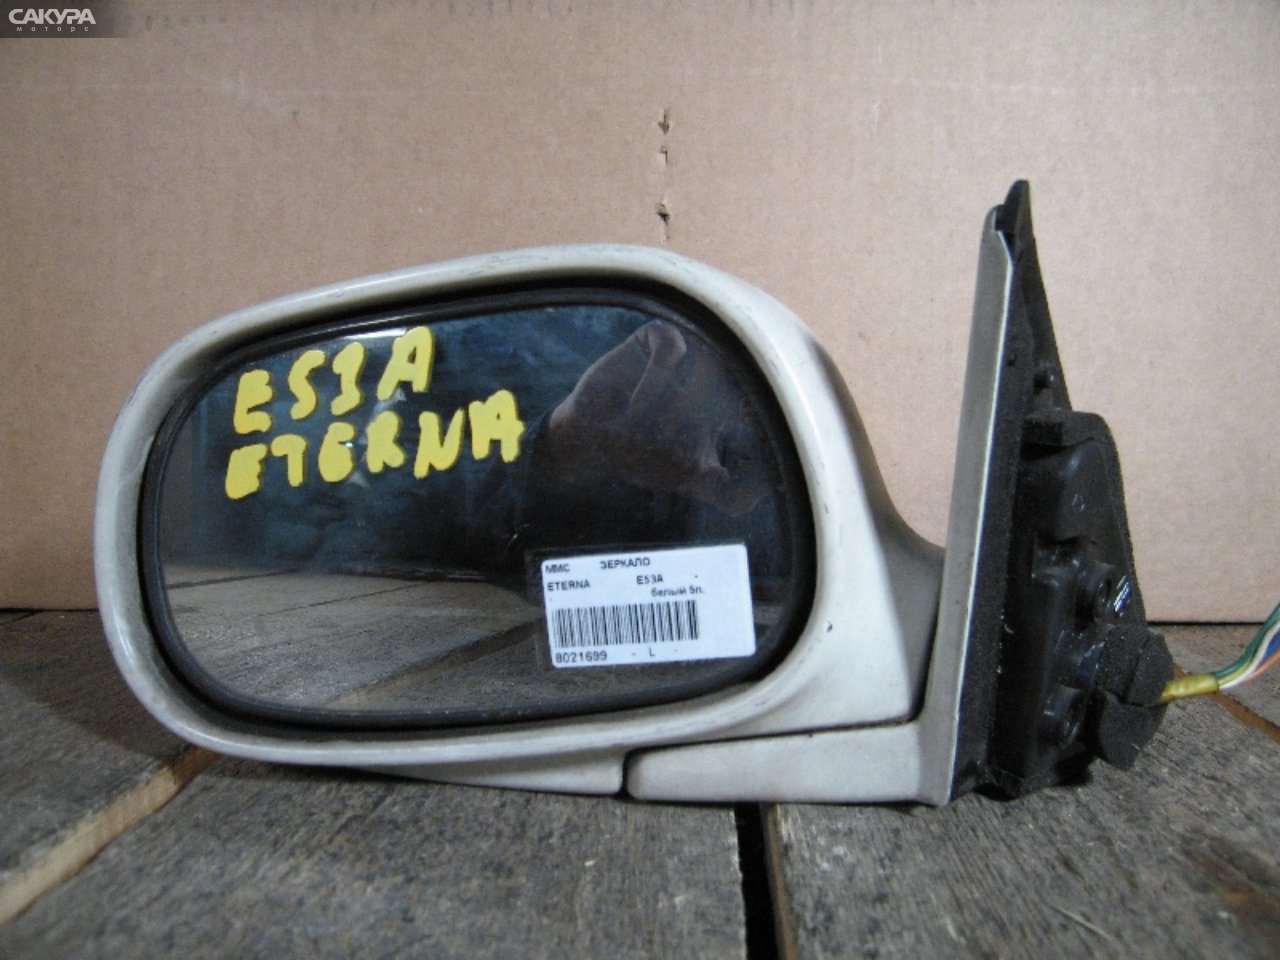 Зеркало боковое левое Mitsubishi Eterna E53A: купить в Сакура Абакан.